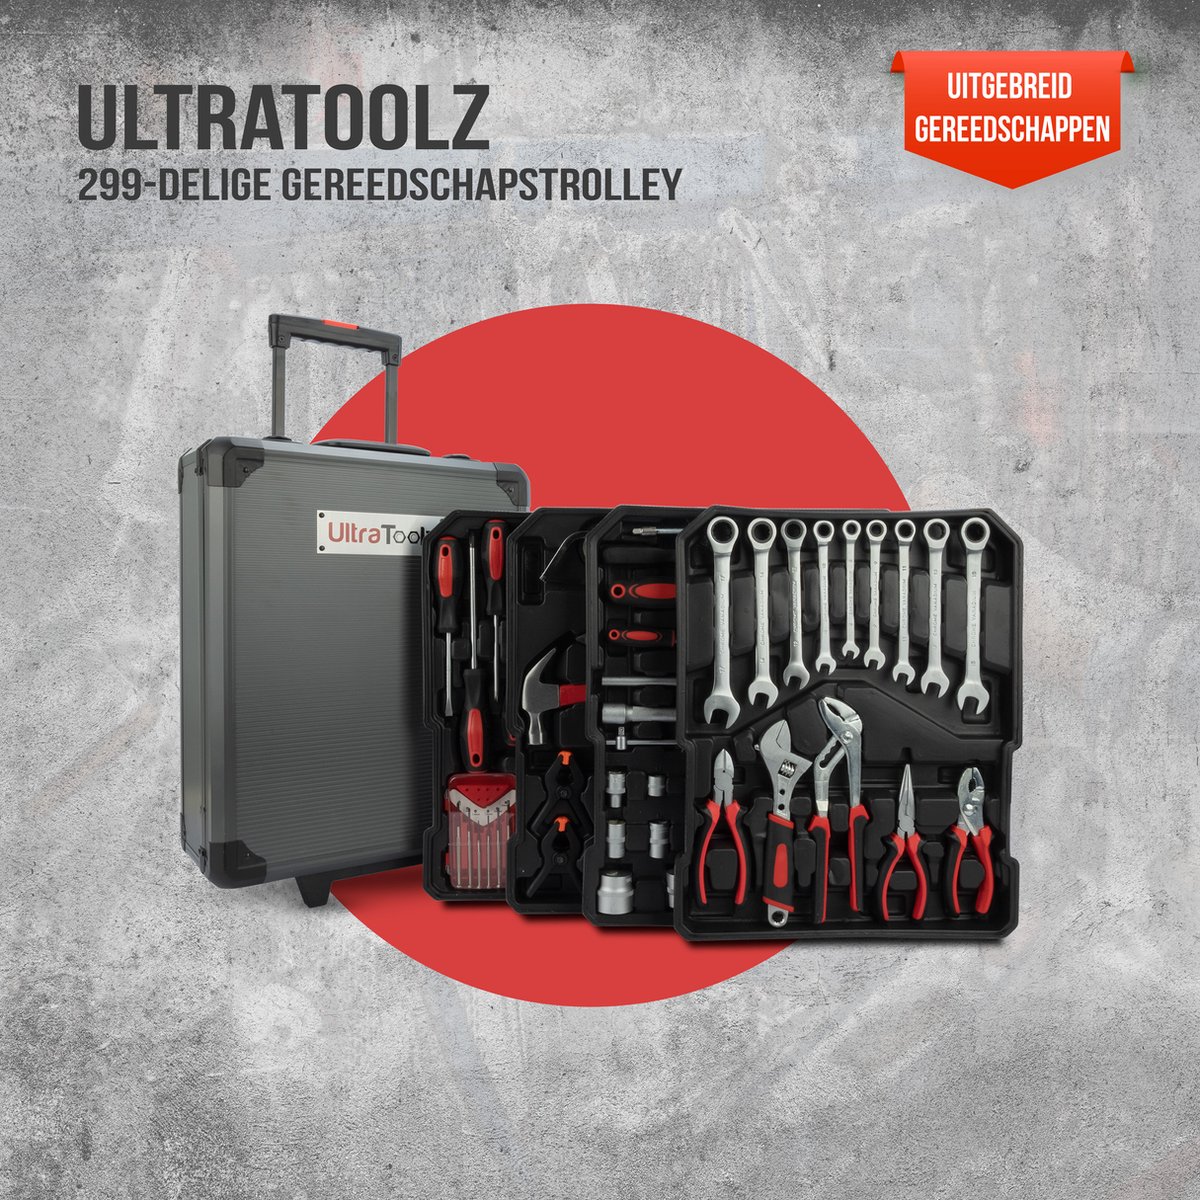 Ultratoolz Trolley - Gereedschapskoffer 299-Delig - Gereedschapskist Stevig - Gereedschap inclusief 3 standen - Kwalitatief aluminium - Alles in een